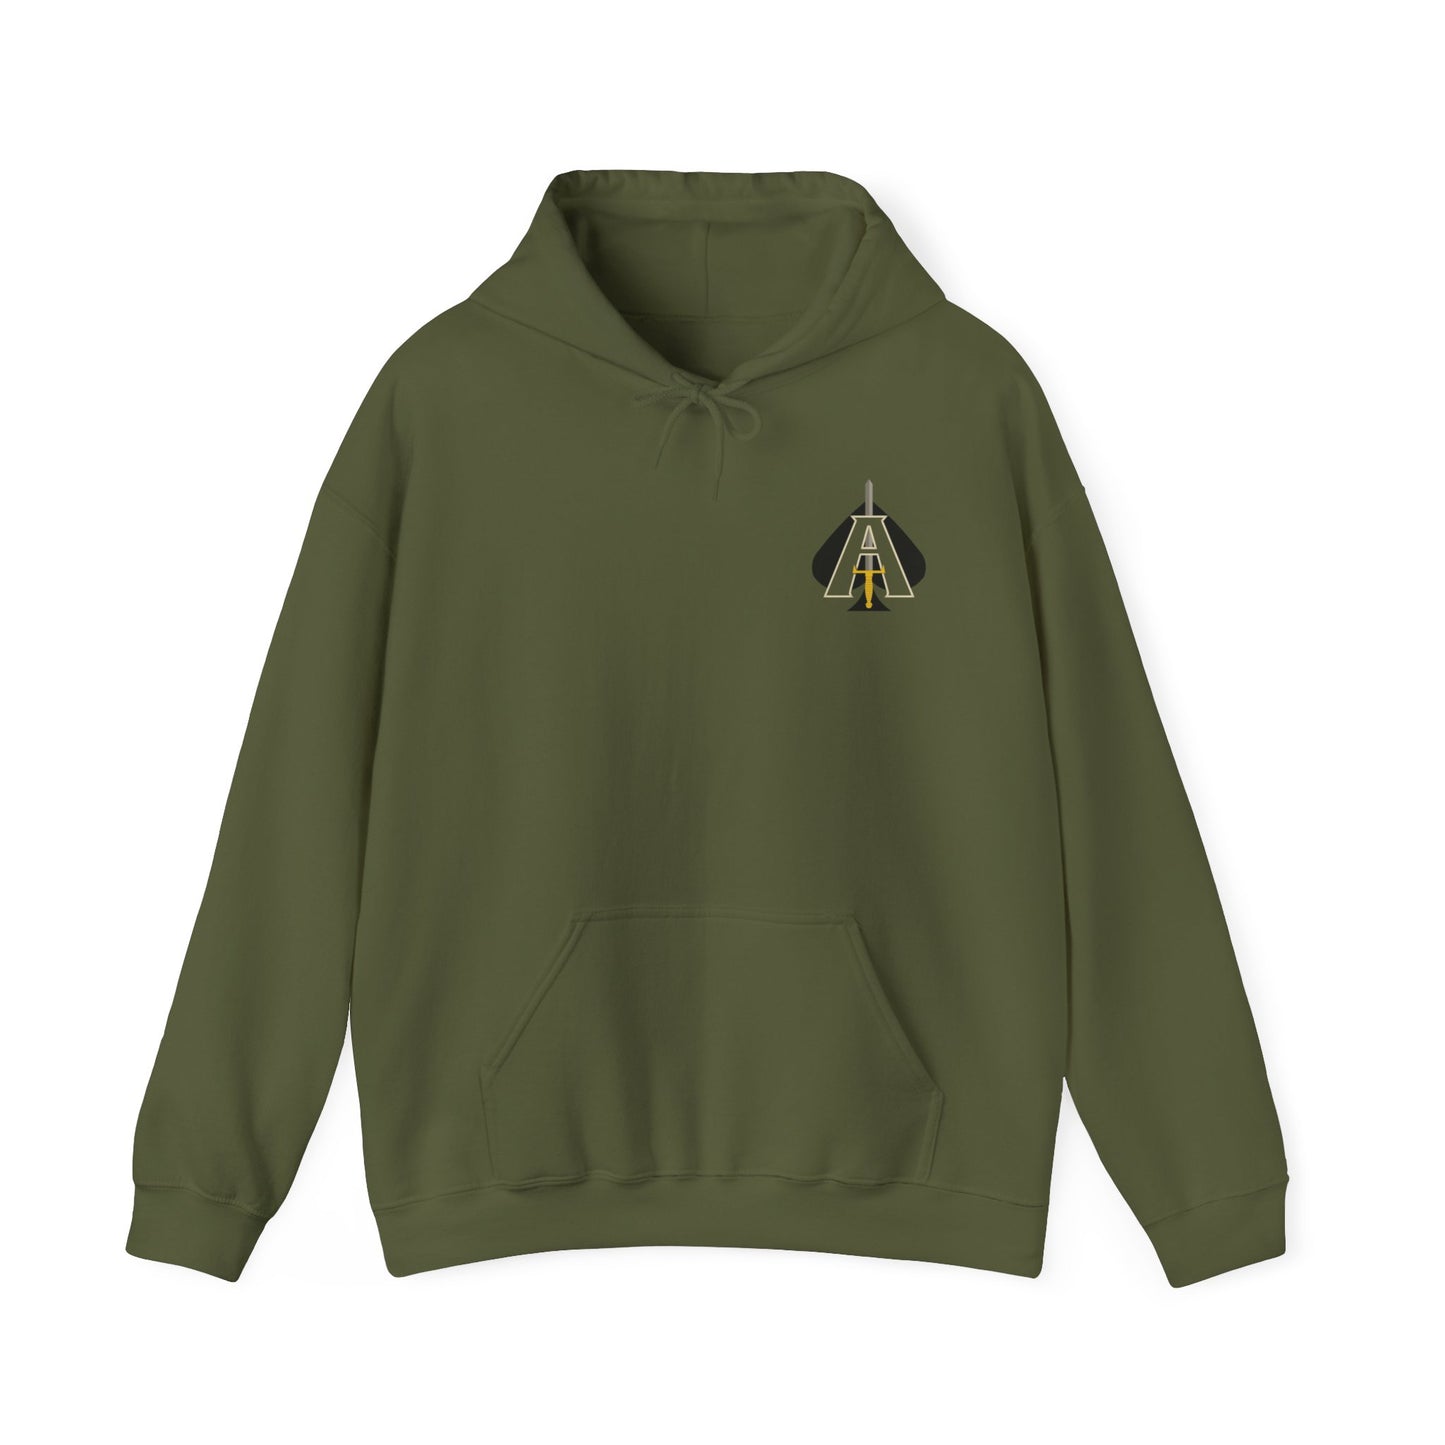 JCU Best Troop Spades Colored DUI Hooded Sweatshirt